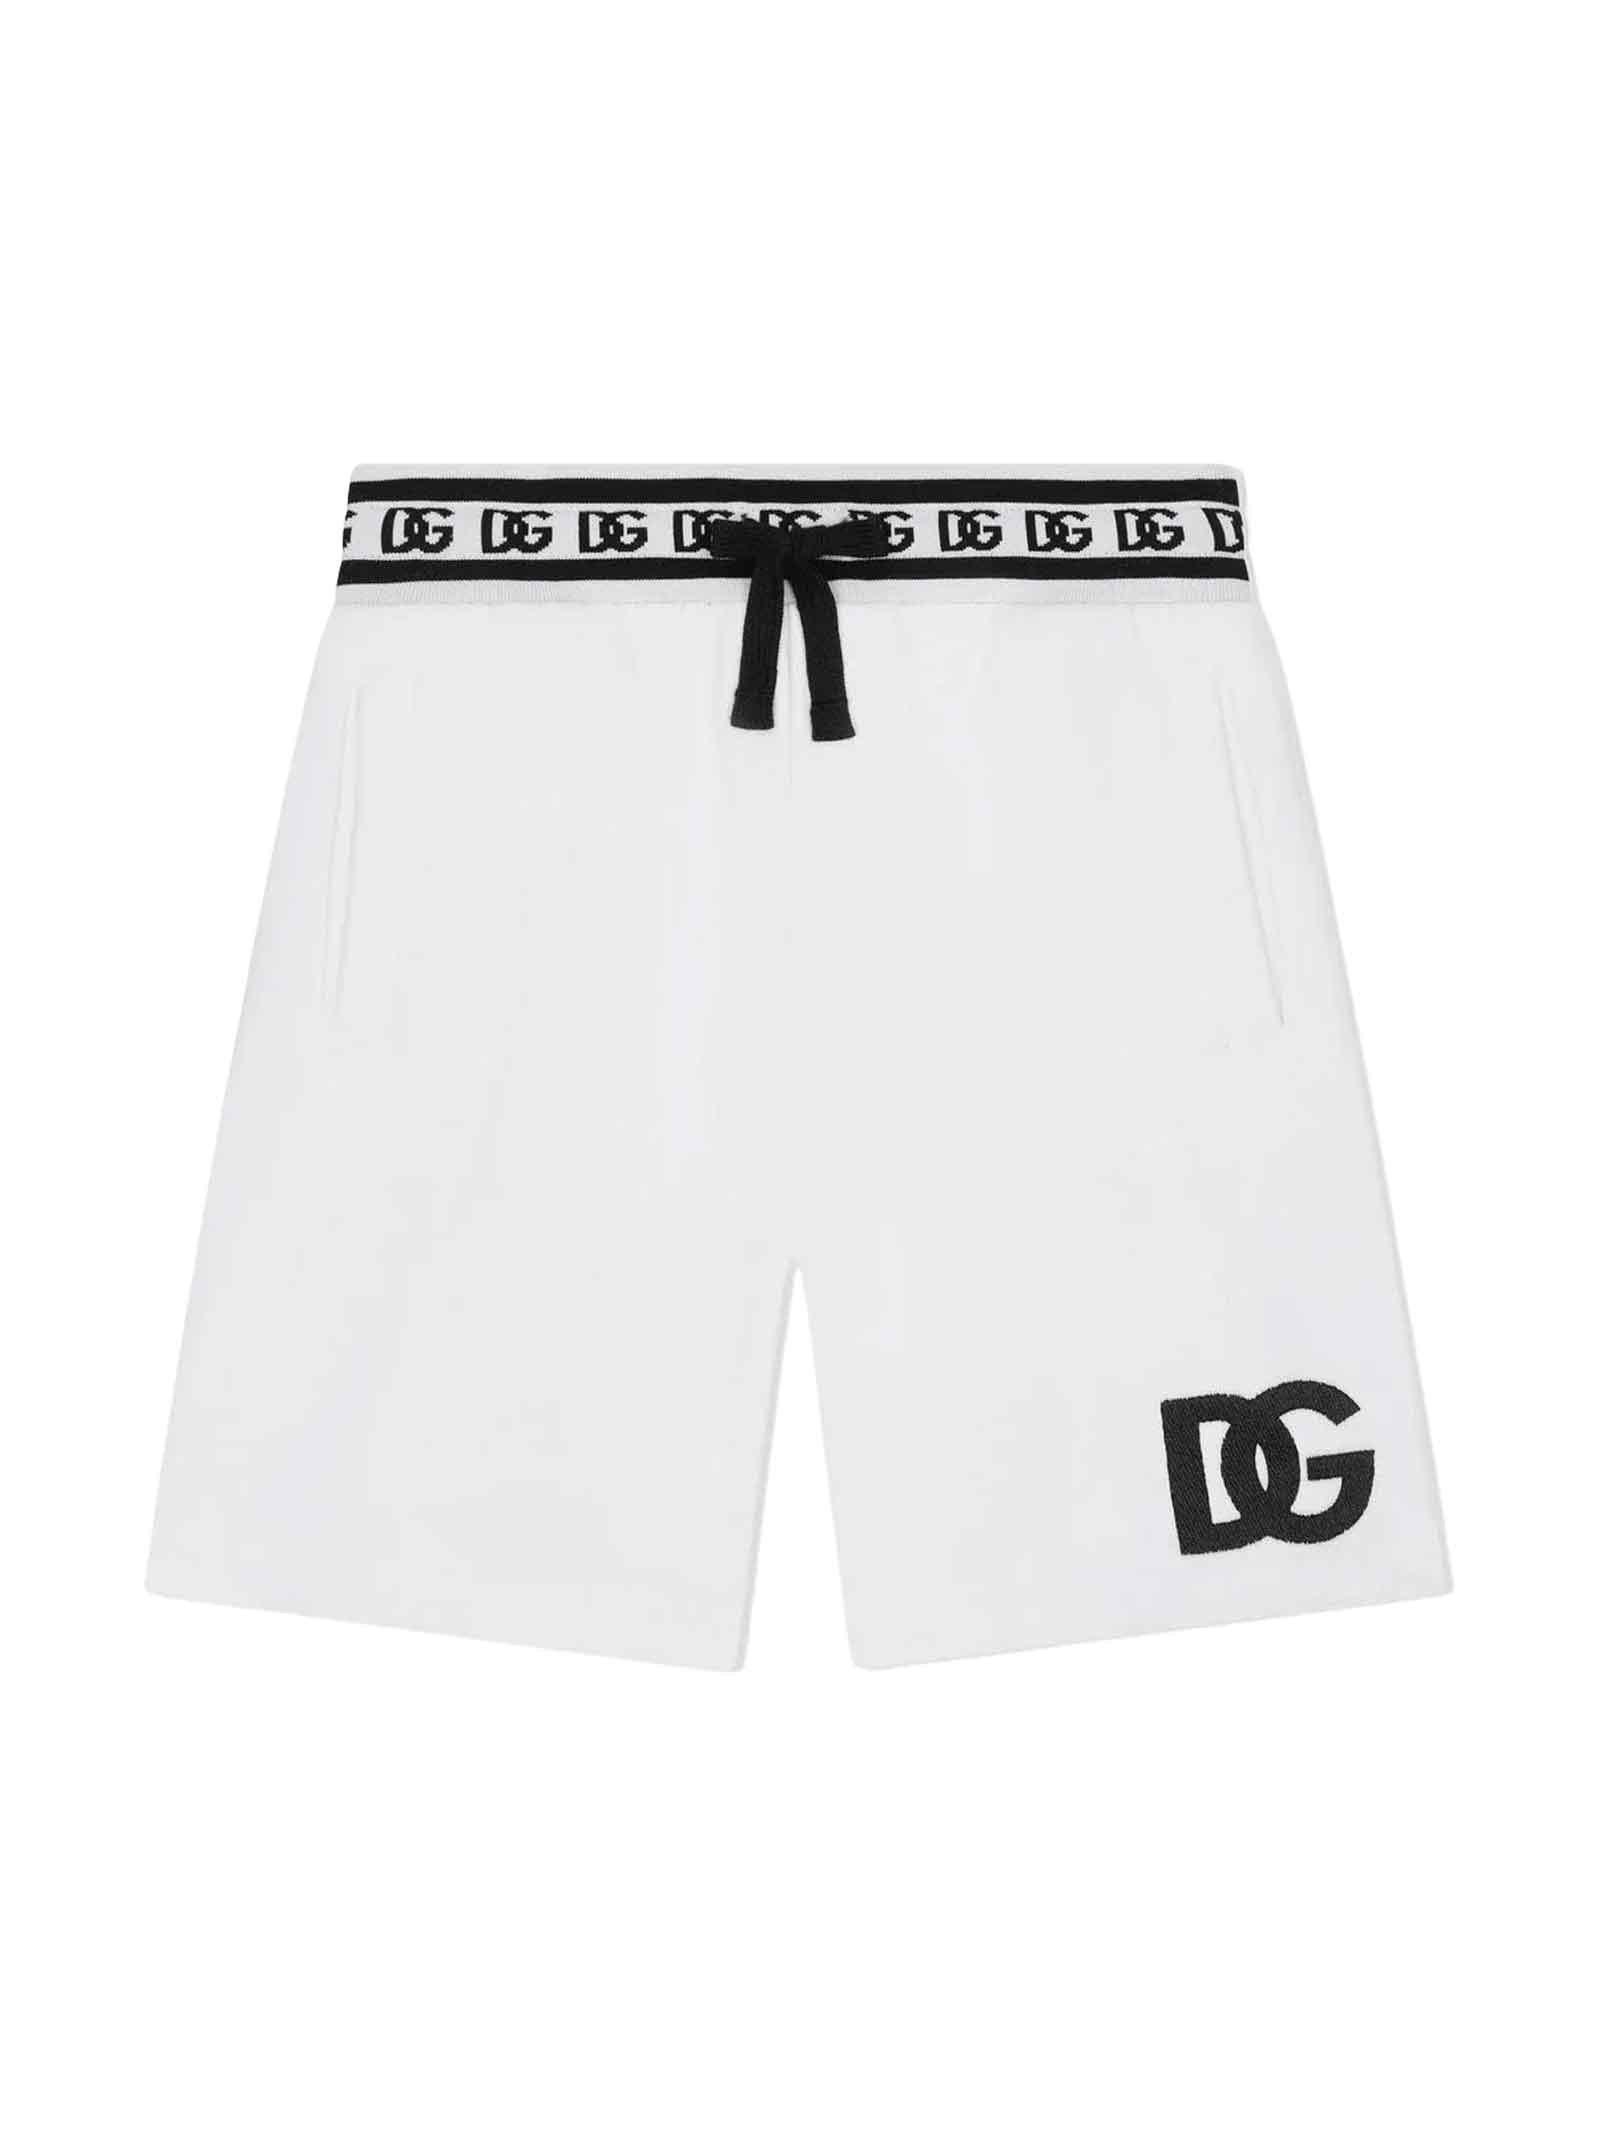 Dolce & Gabbana Kids' White Shorts Boy